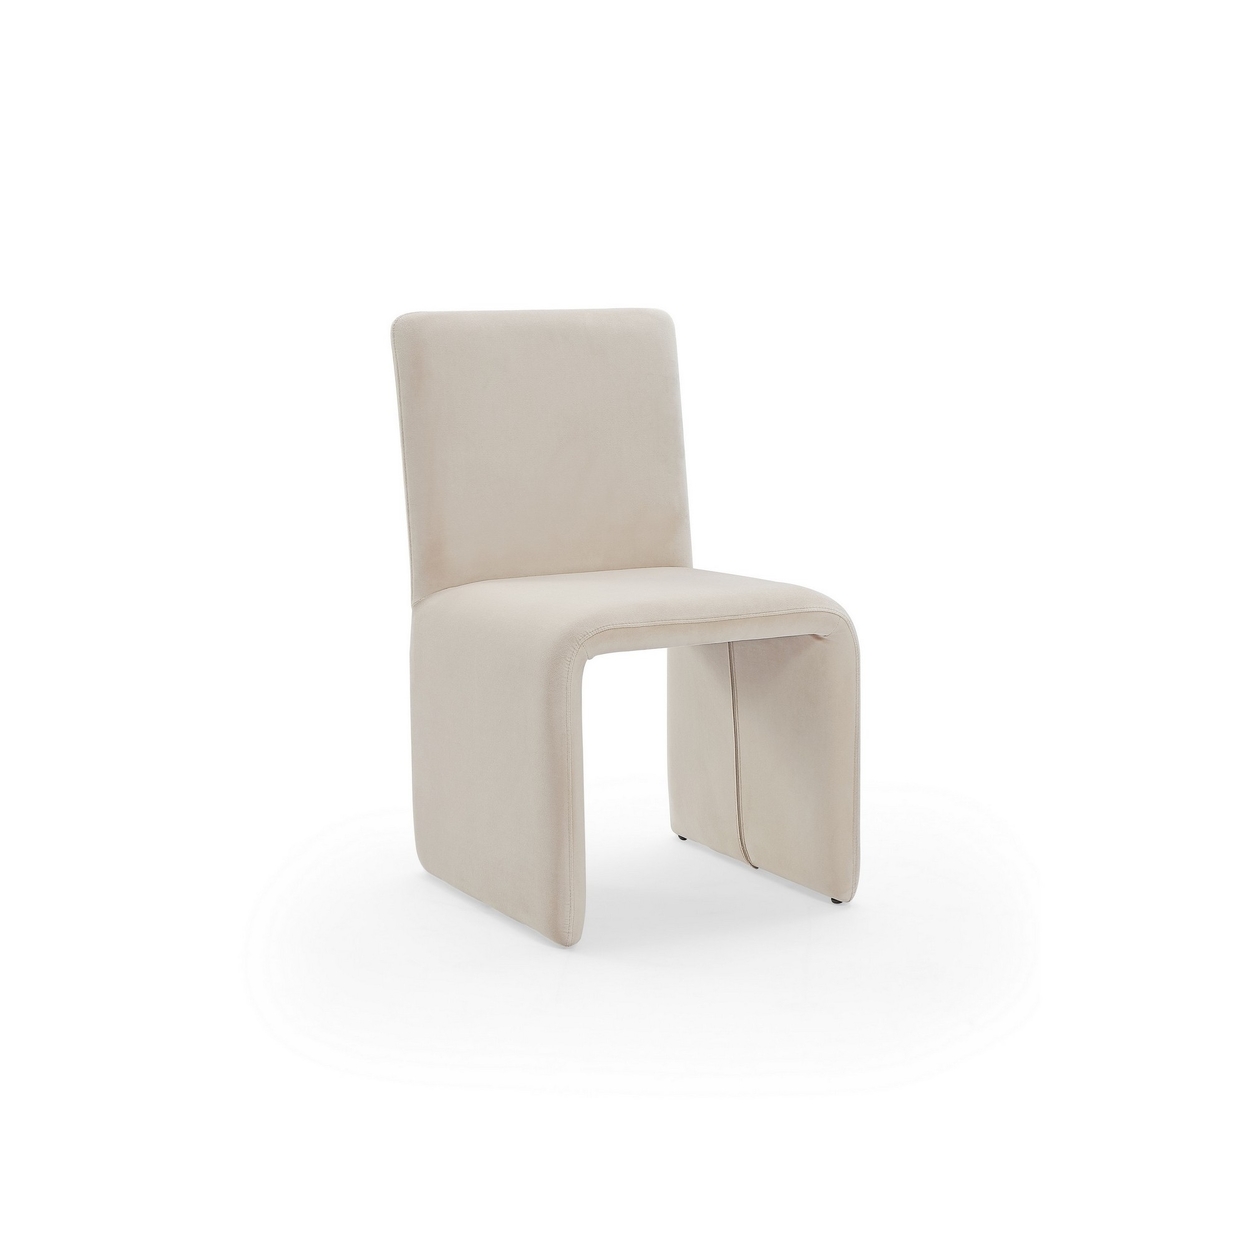 Winny 20 Inch Dining Chair, Waterfall Seat, Velvet Upholstery, Cream -Saltoro Sherpi